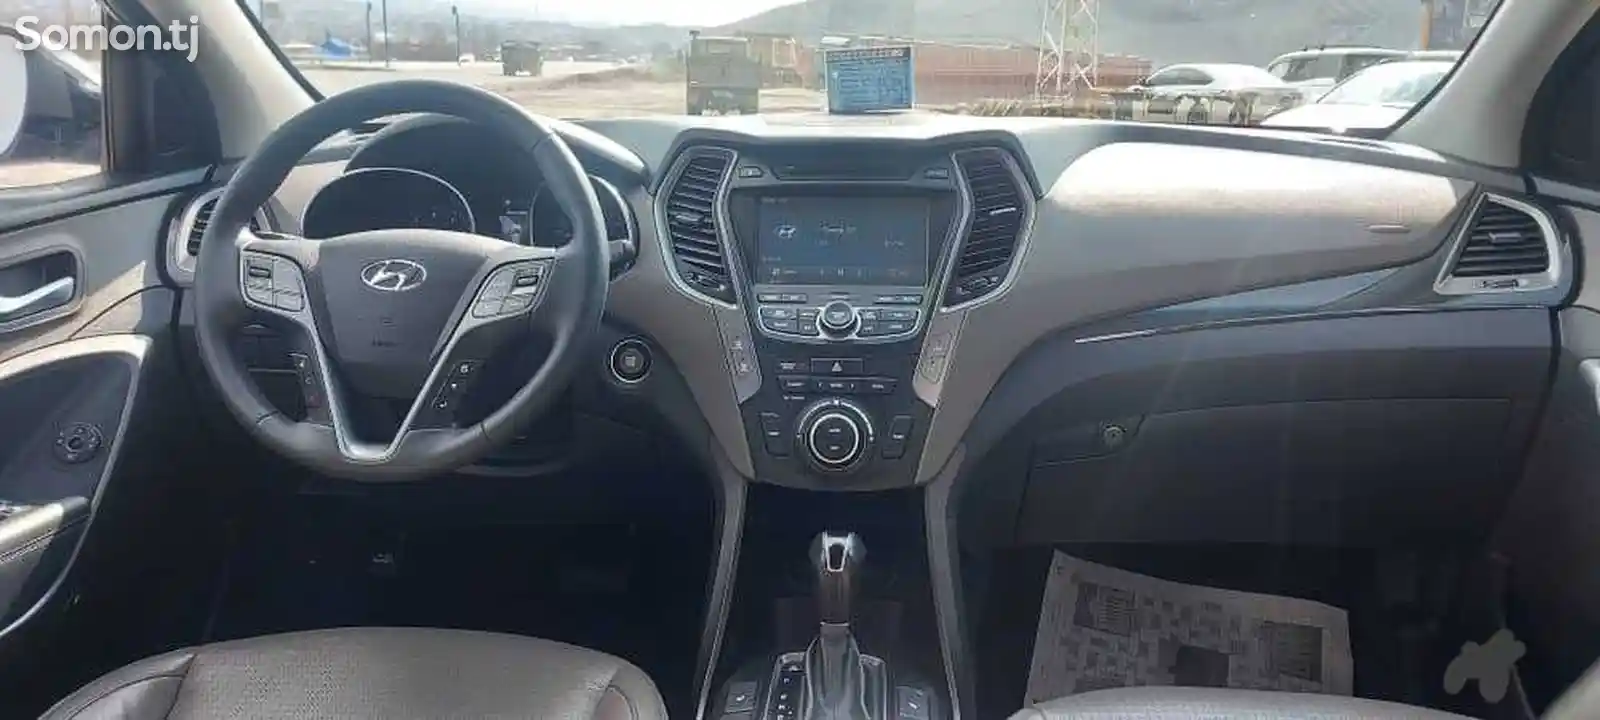 Hyundai Santa Fe, 2014-13